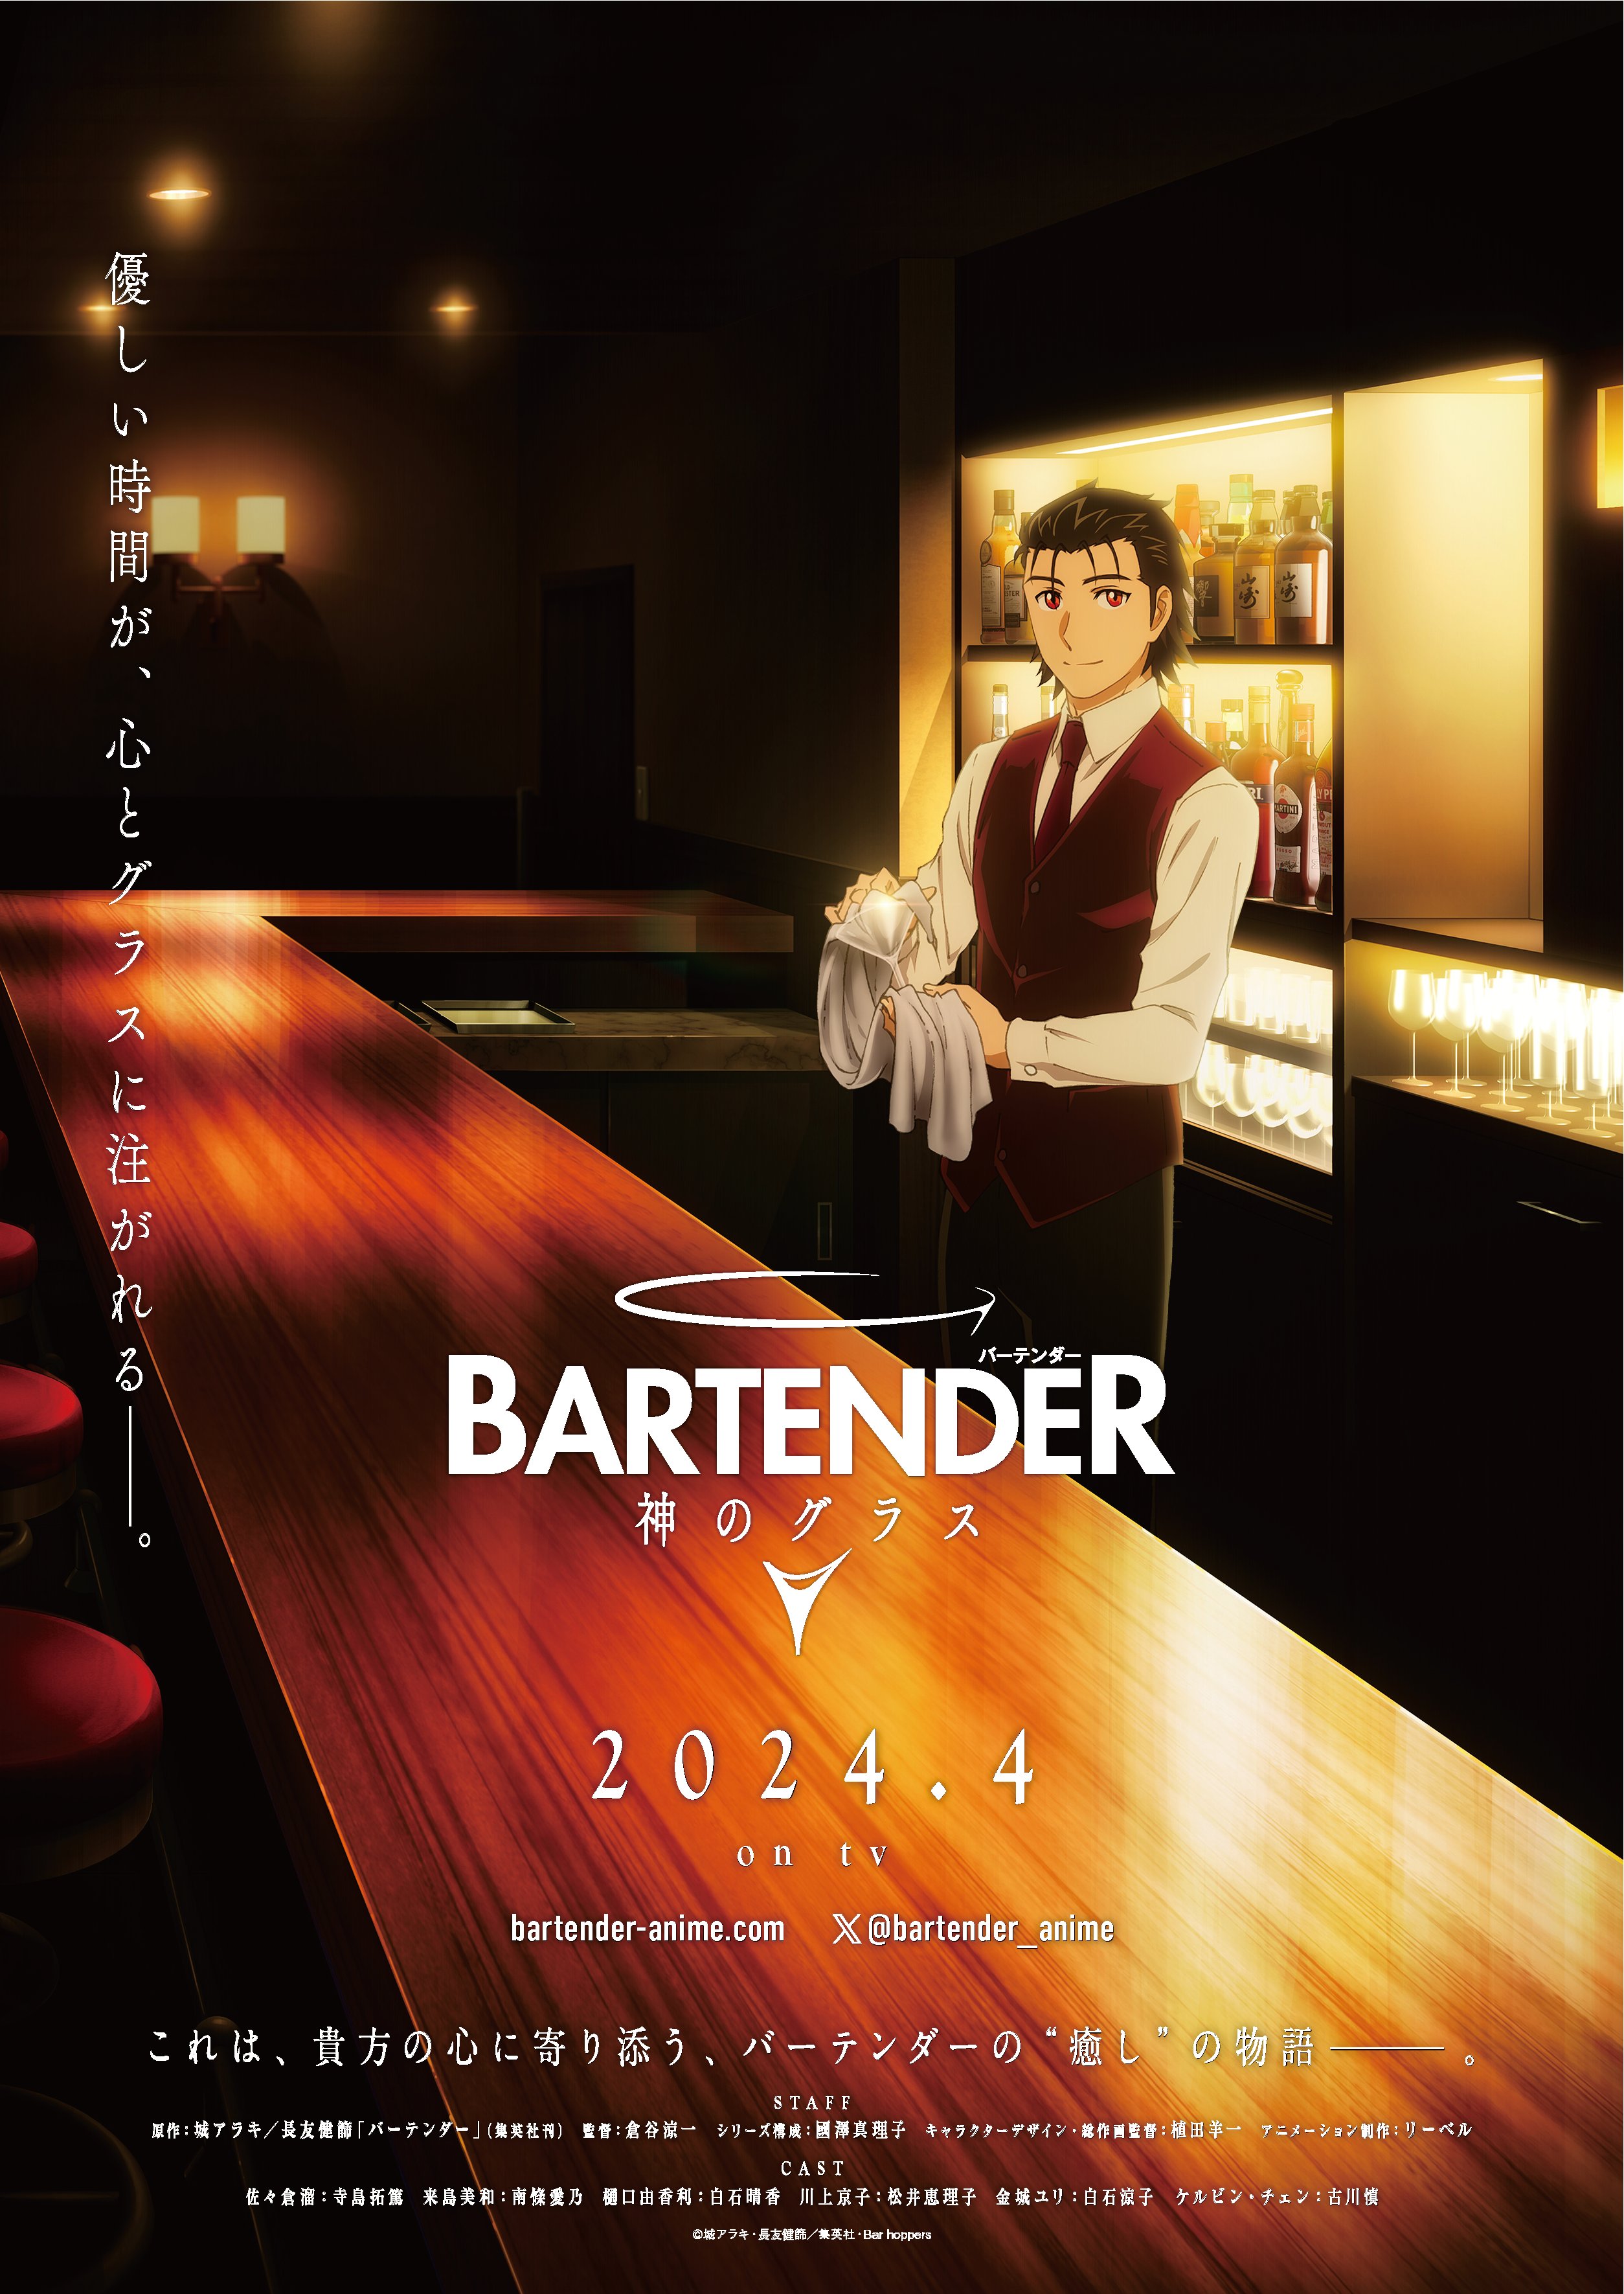 bartender glass god anime visual trailer